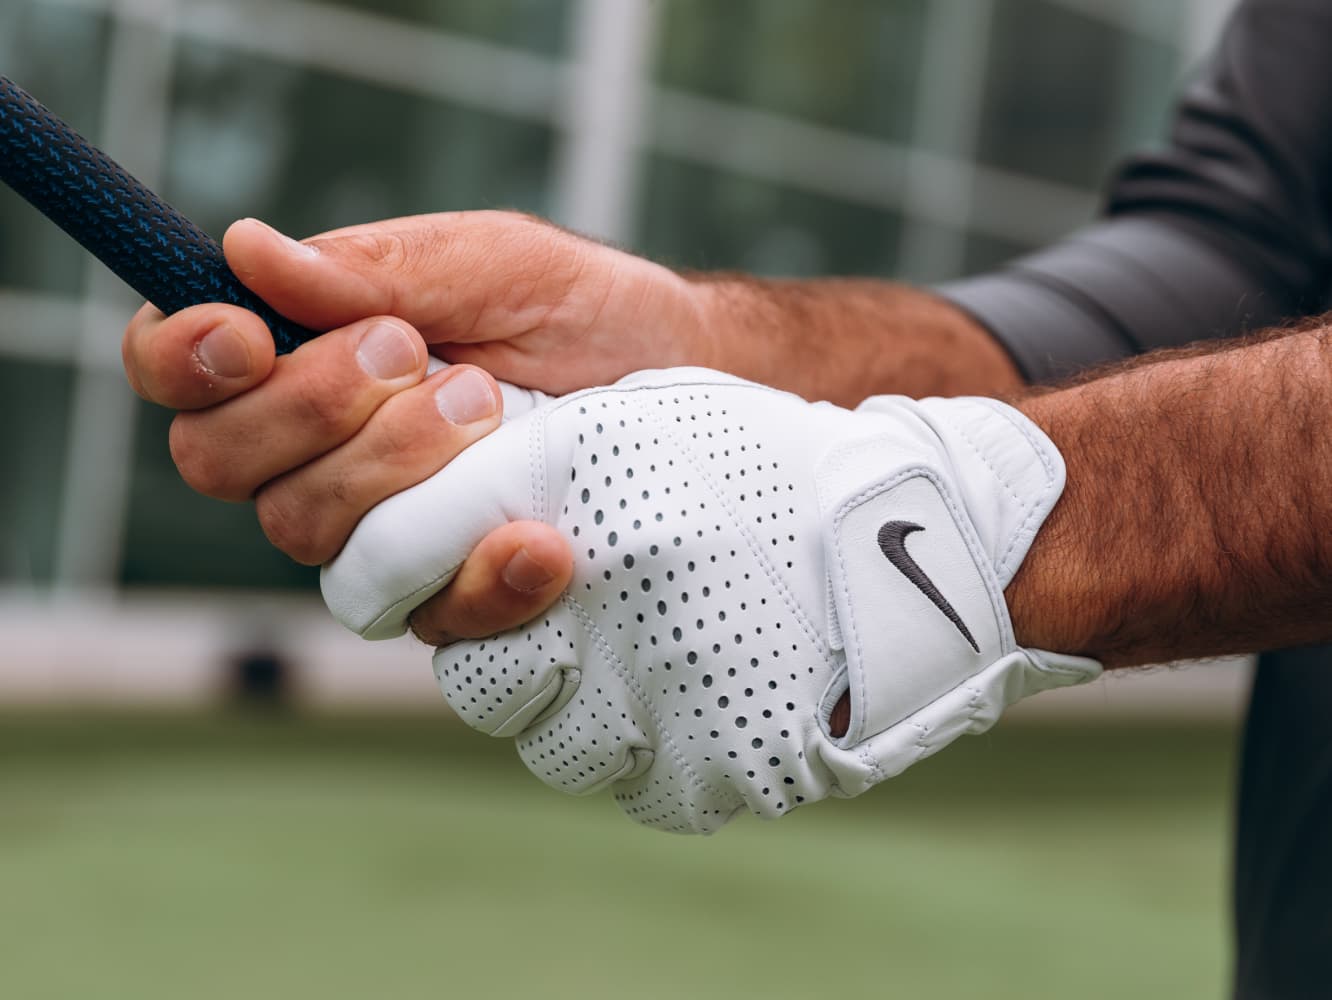 Golf. Nike.com